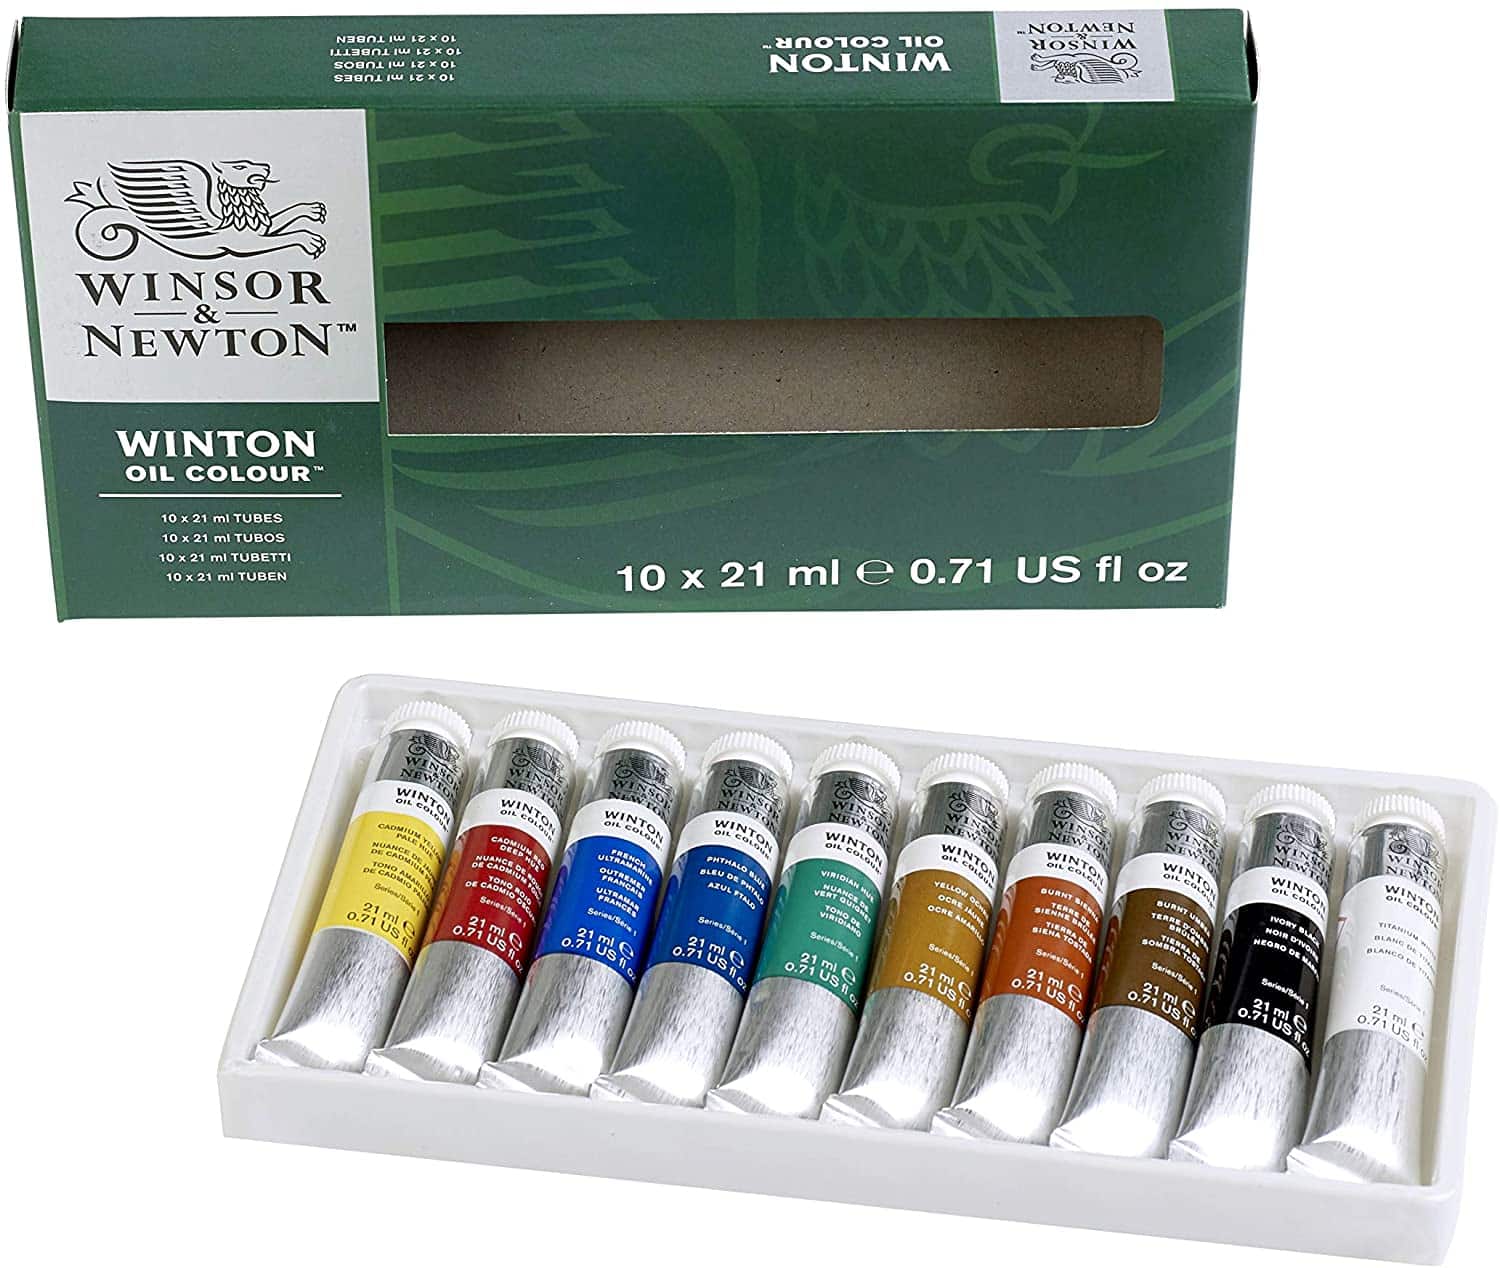 Winsor & Newton Winton Oil Color Paint close up